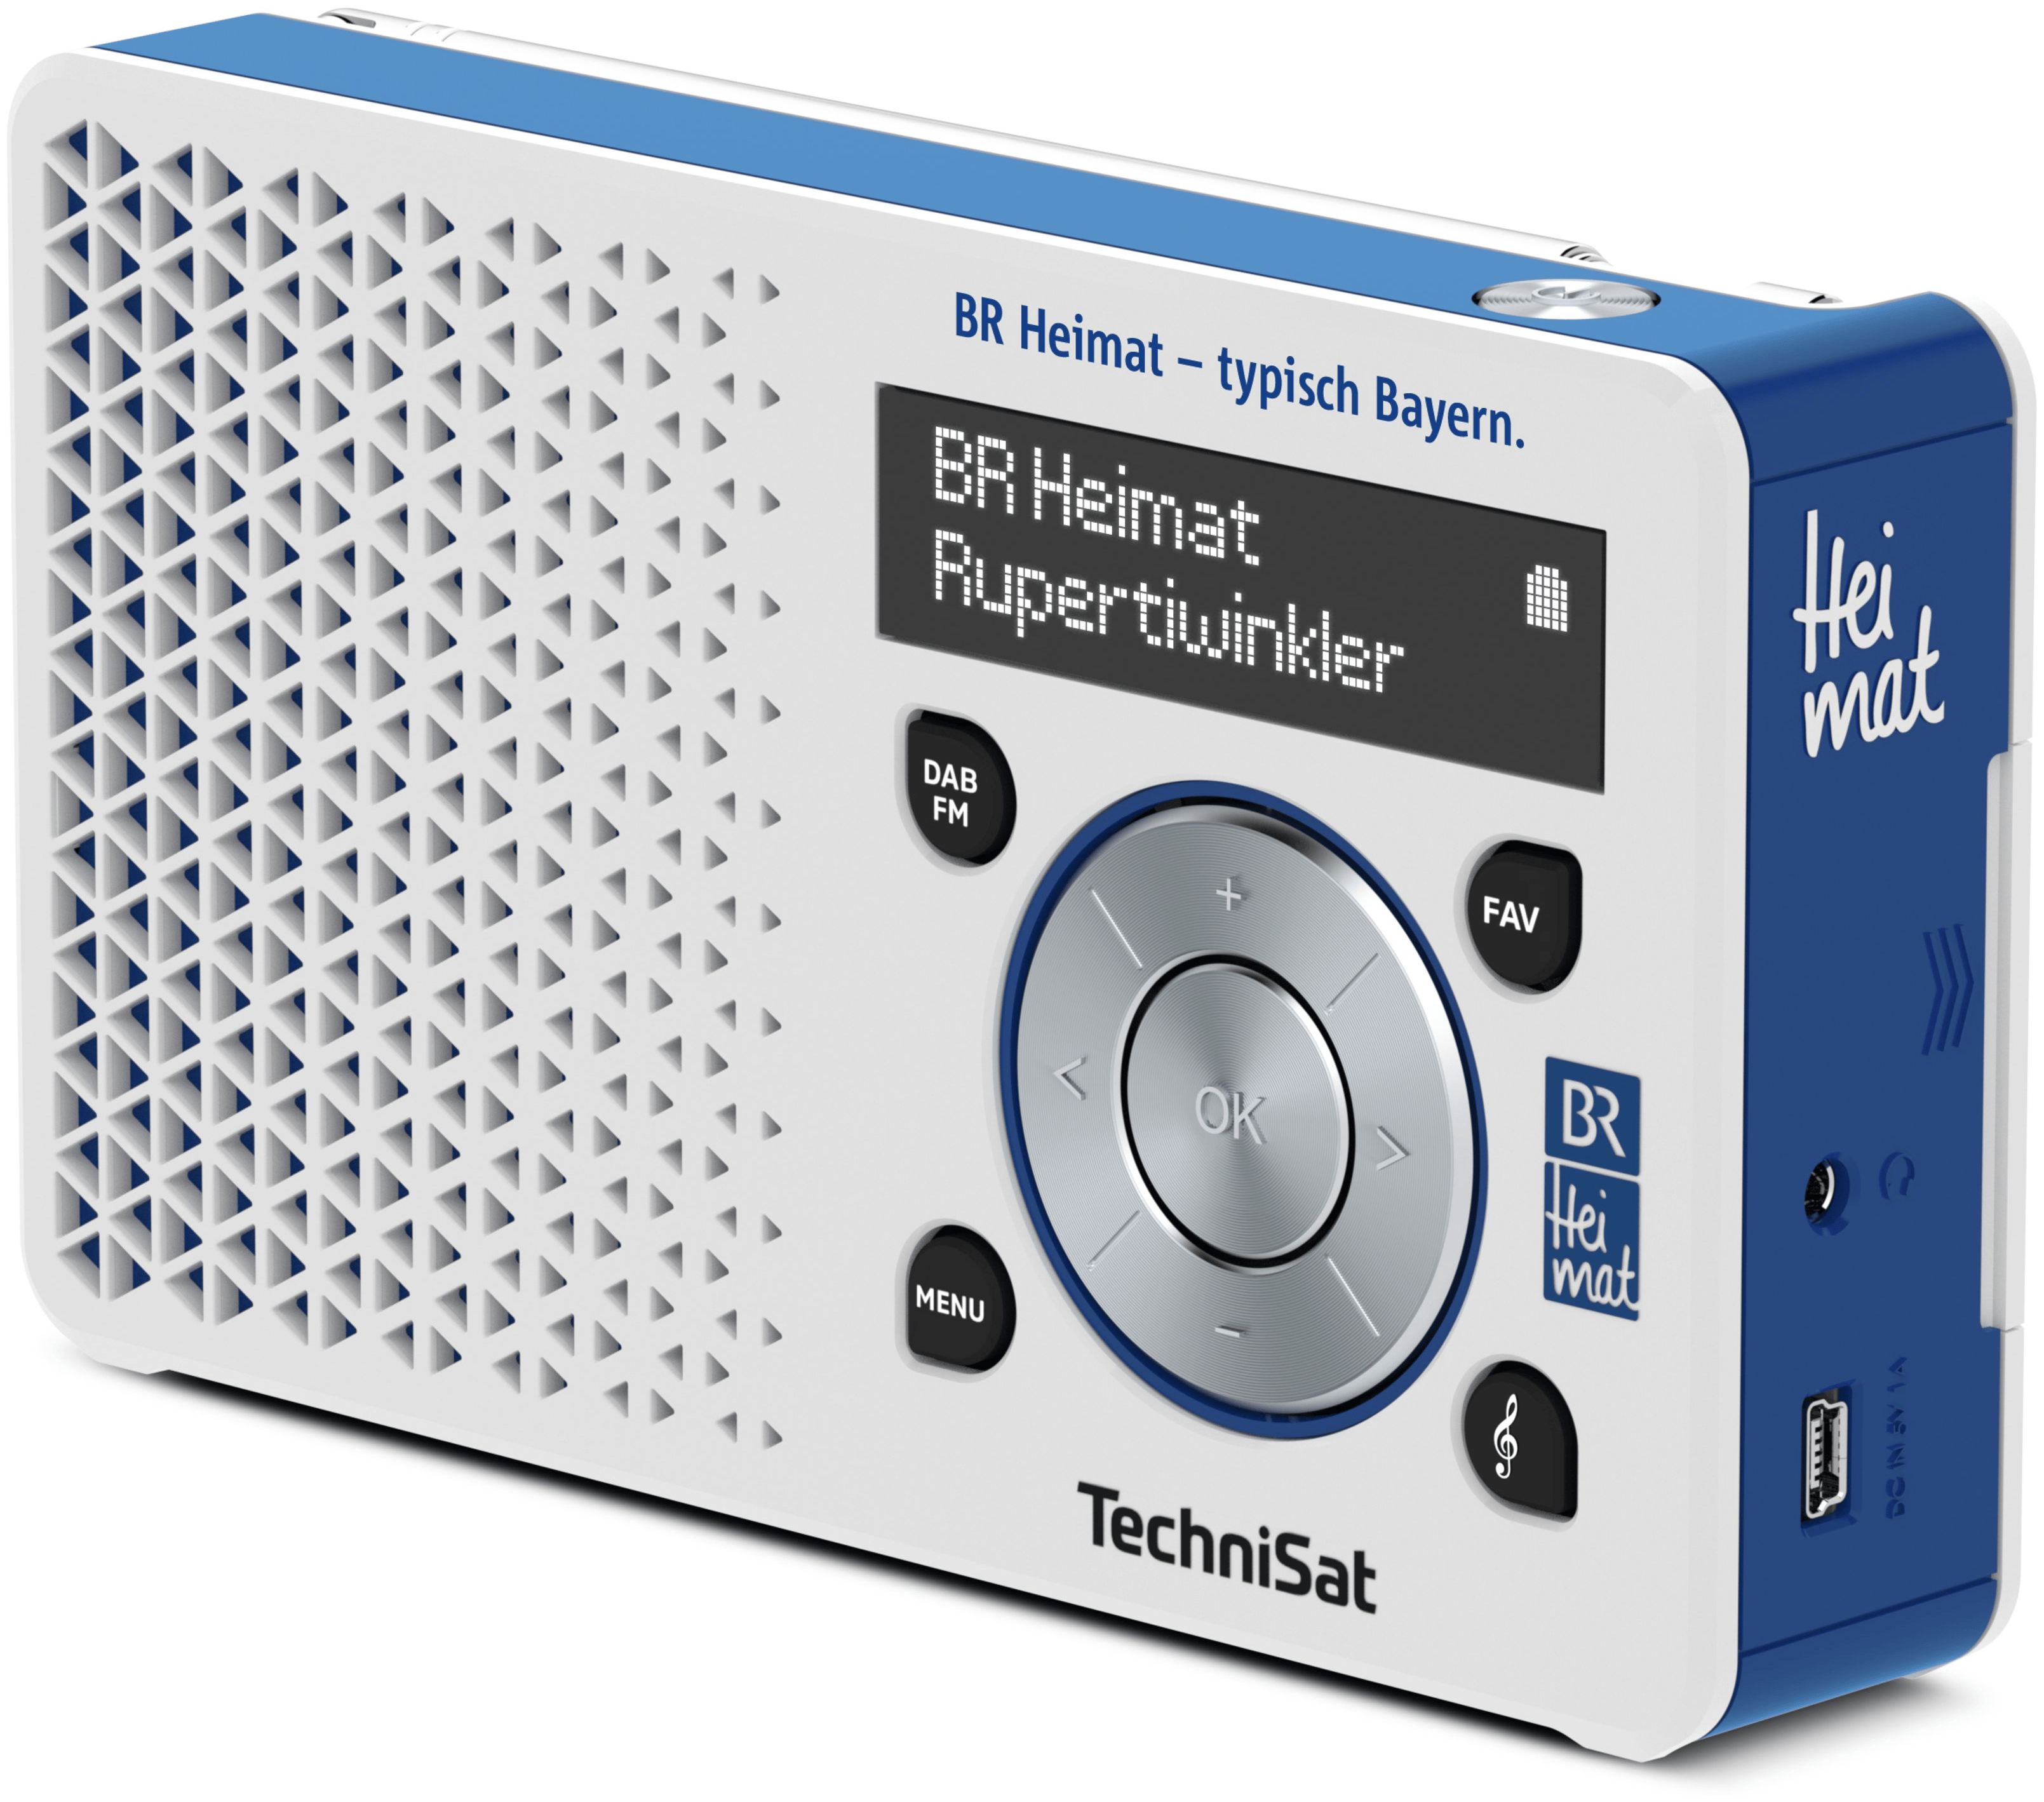 TechniSat DigitRadio1 BR Heimat Edition DAB+, FM Persönlich Radio (Blau,  Silber) von expert Technomarkt